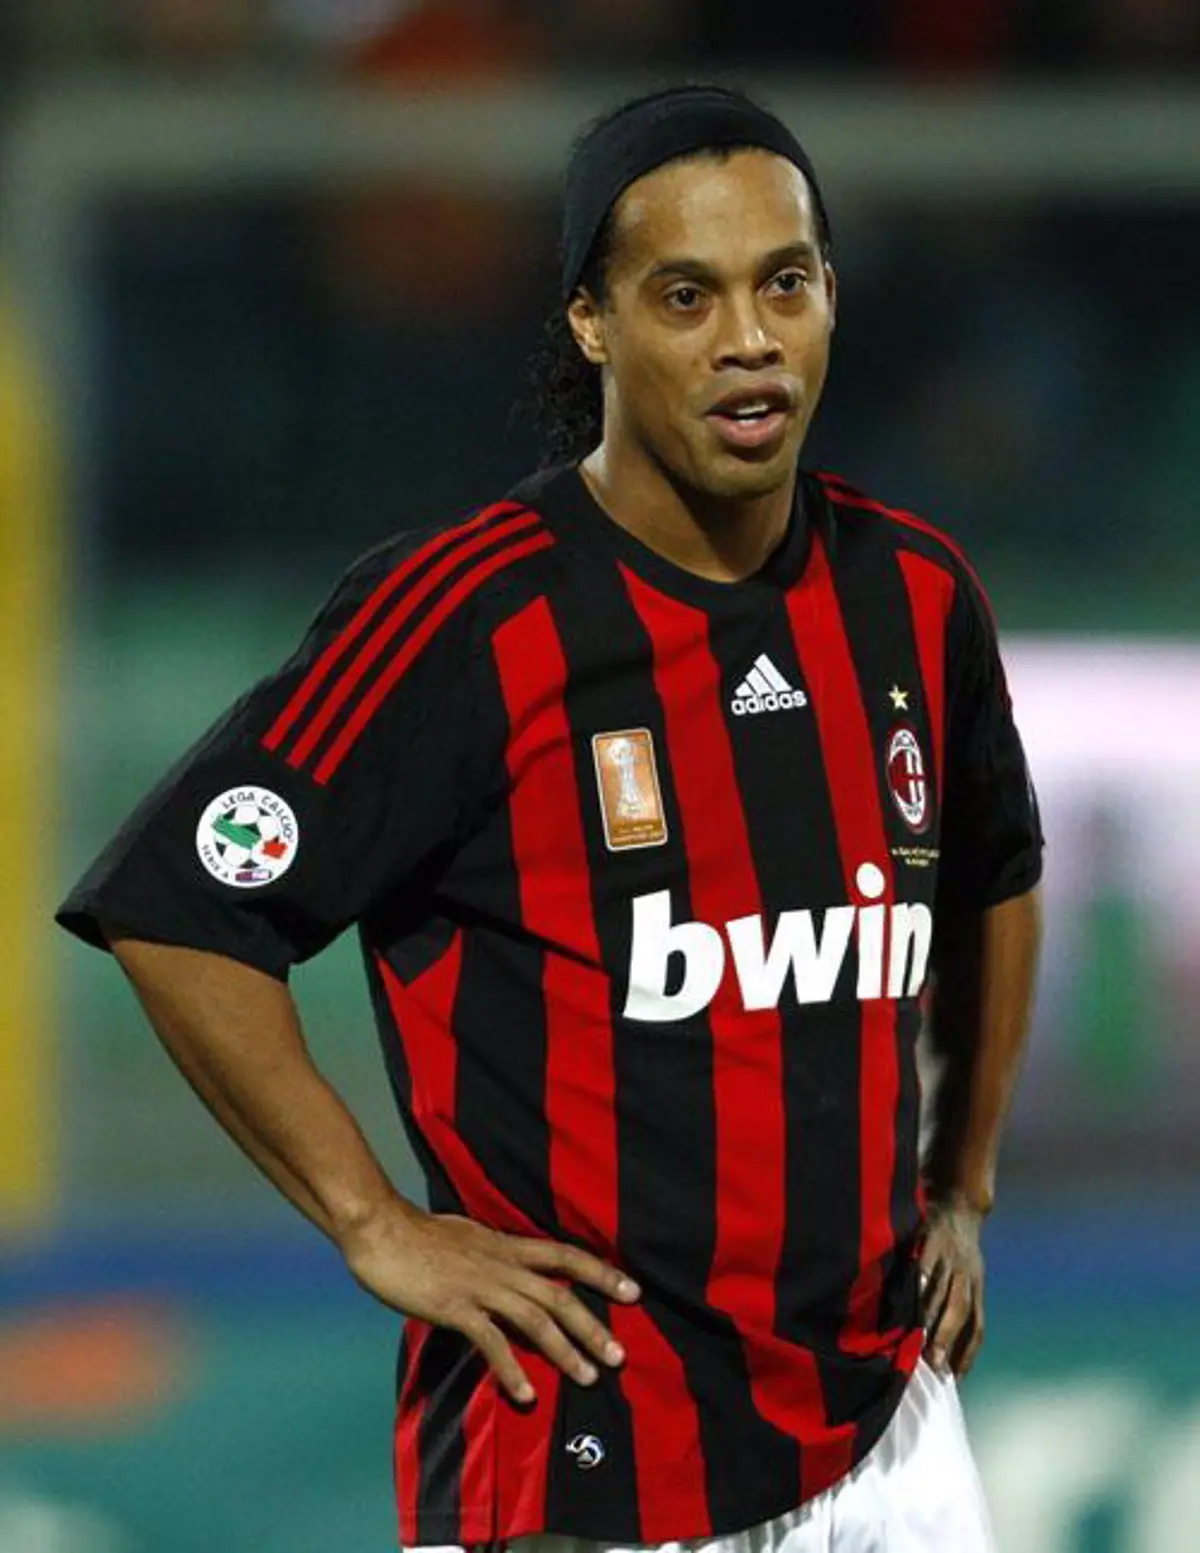 en que año jugo ronaldinho en el milan - Dónde jugaba Ronaldinho en el 2005